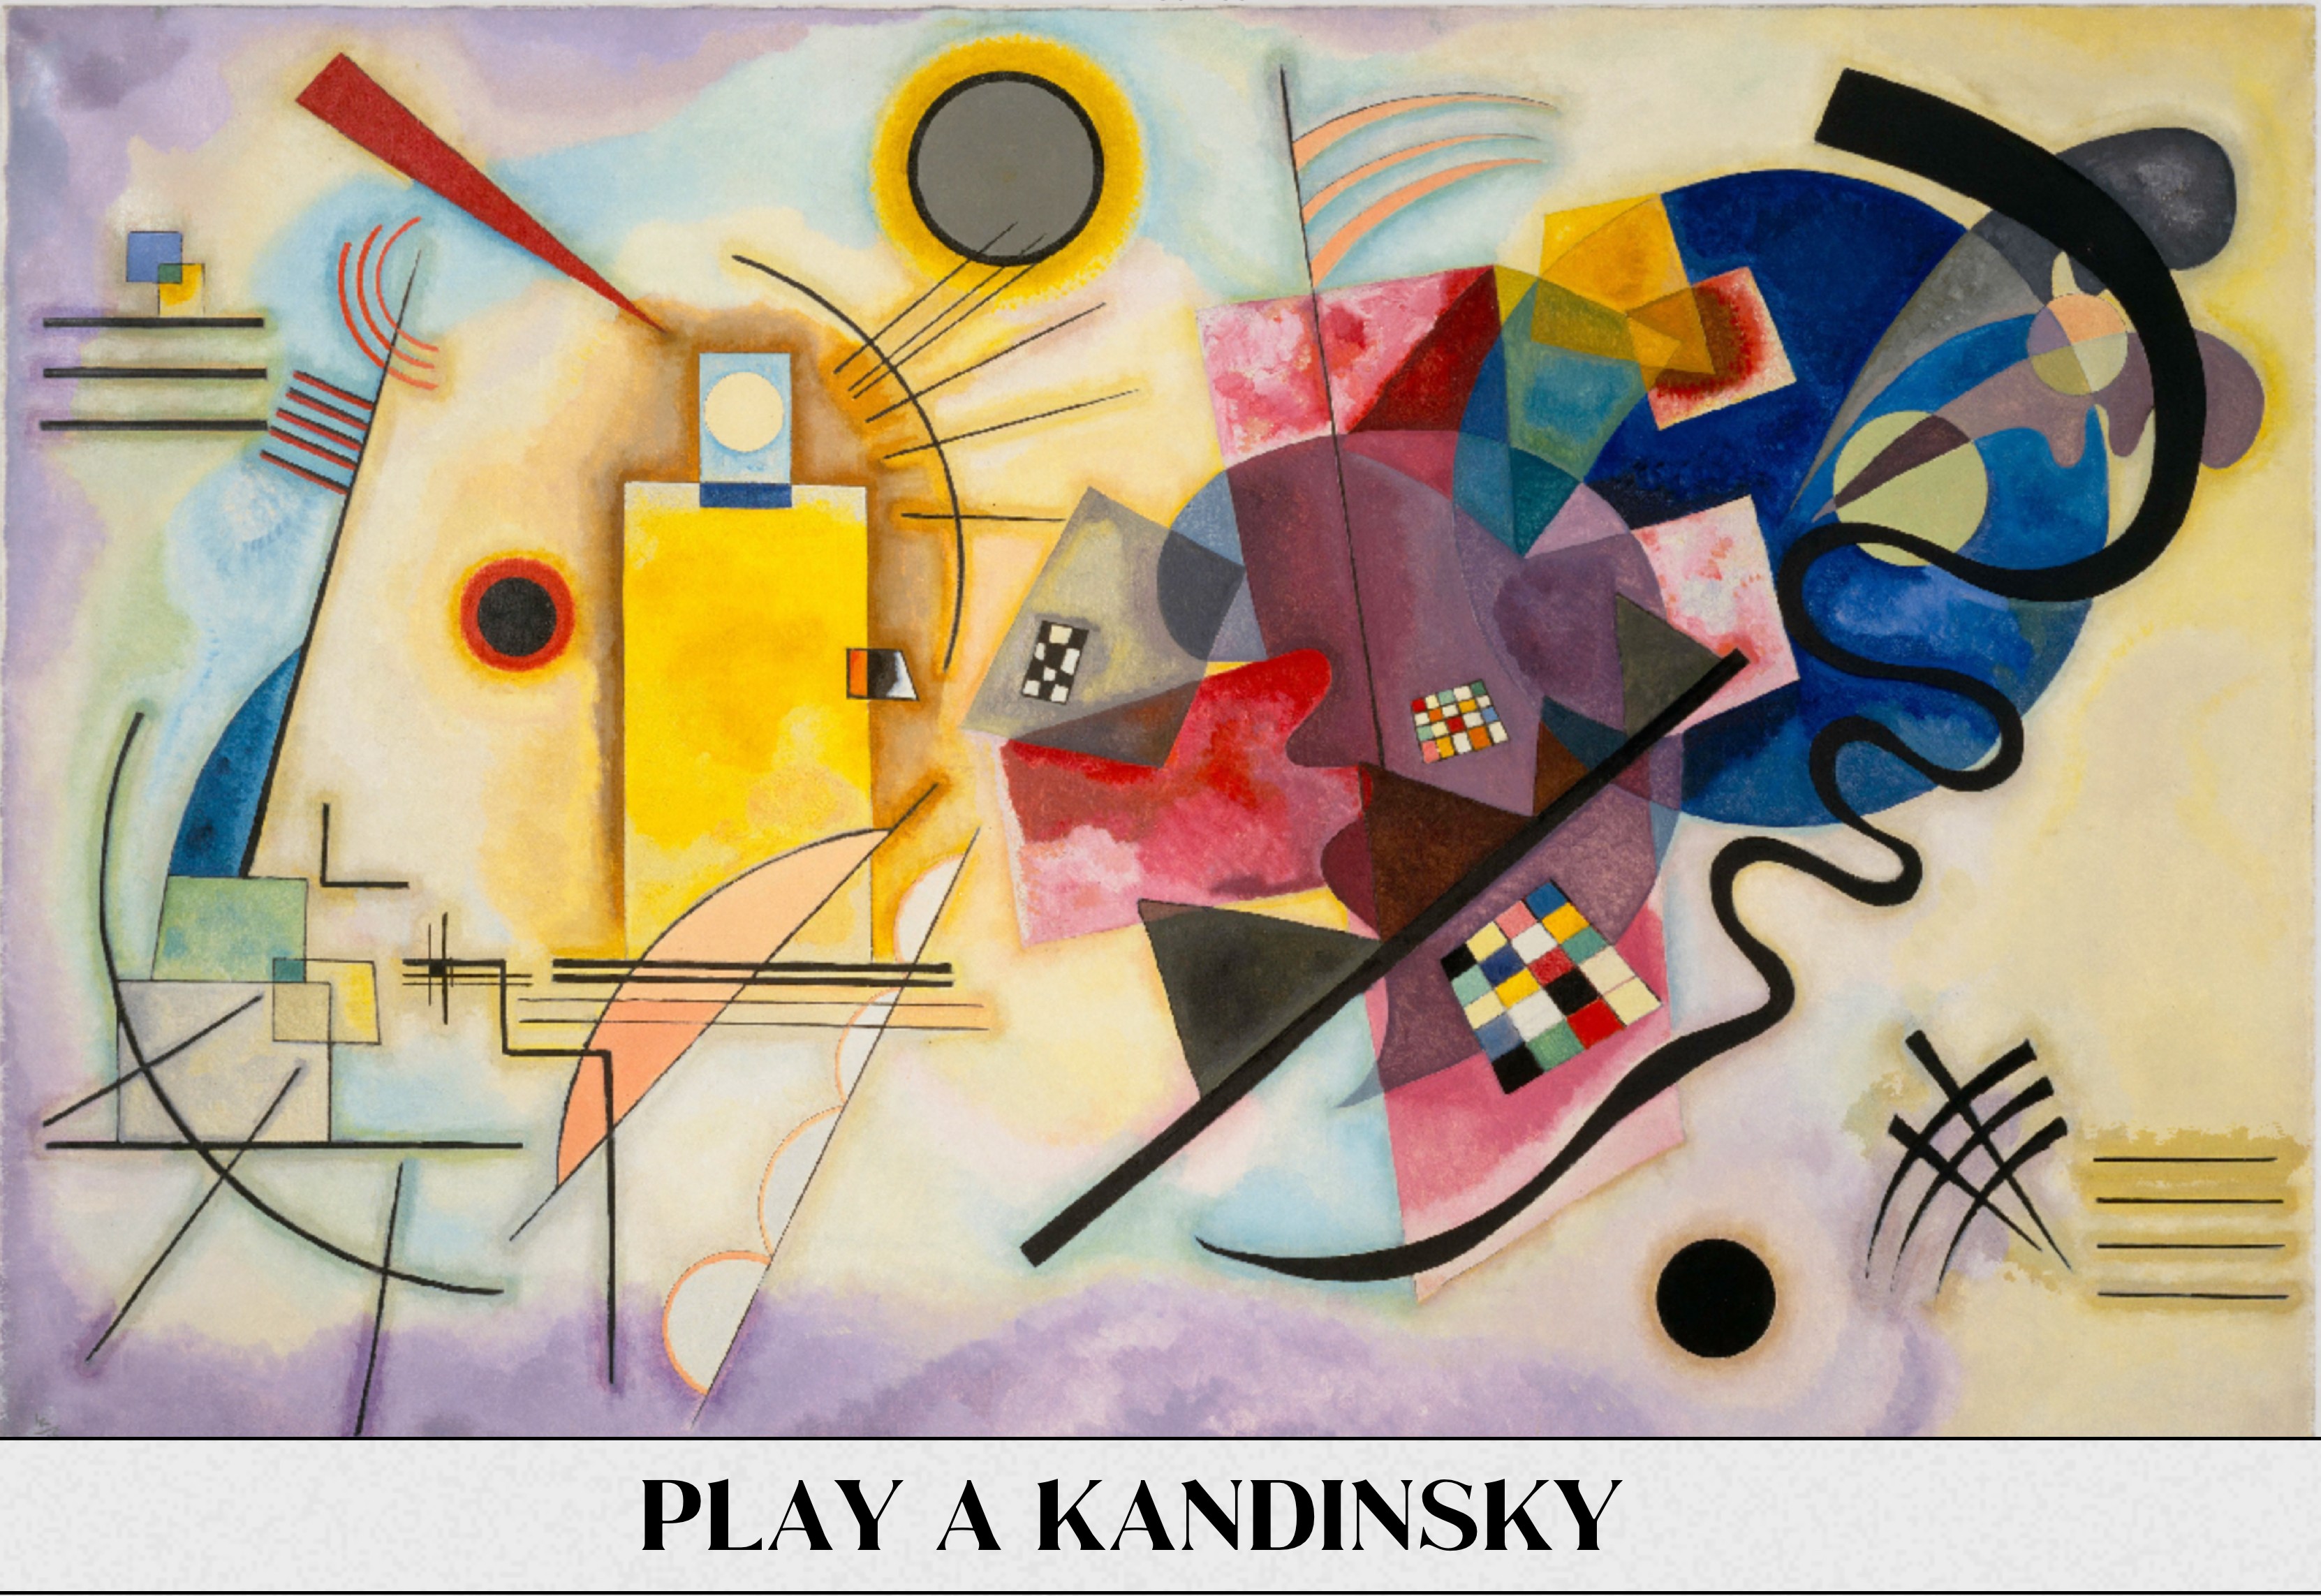 Exposição virtual “Sounds like Kandinsky” apresenta a sessão 